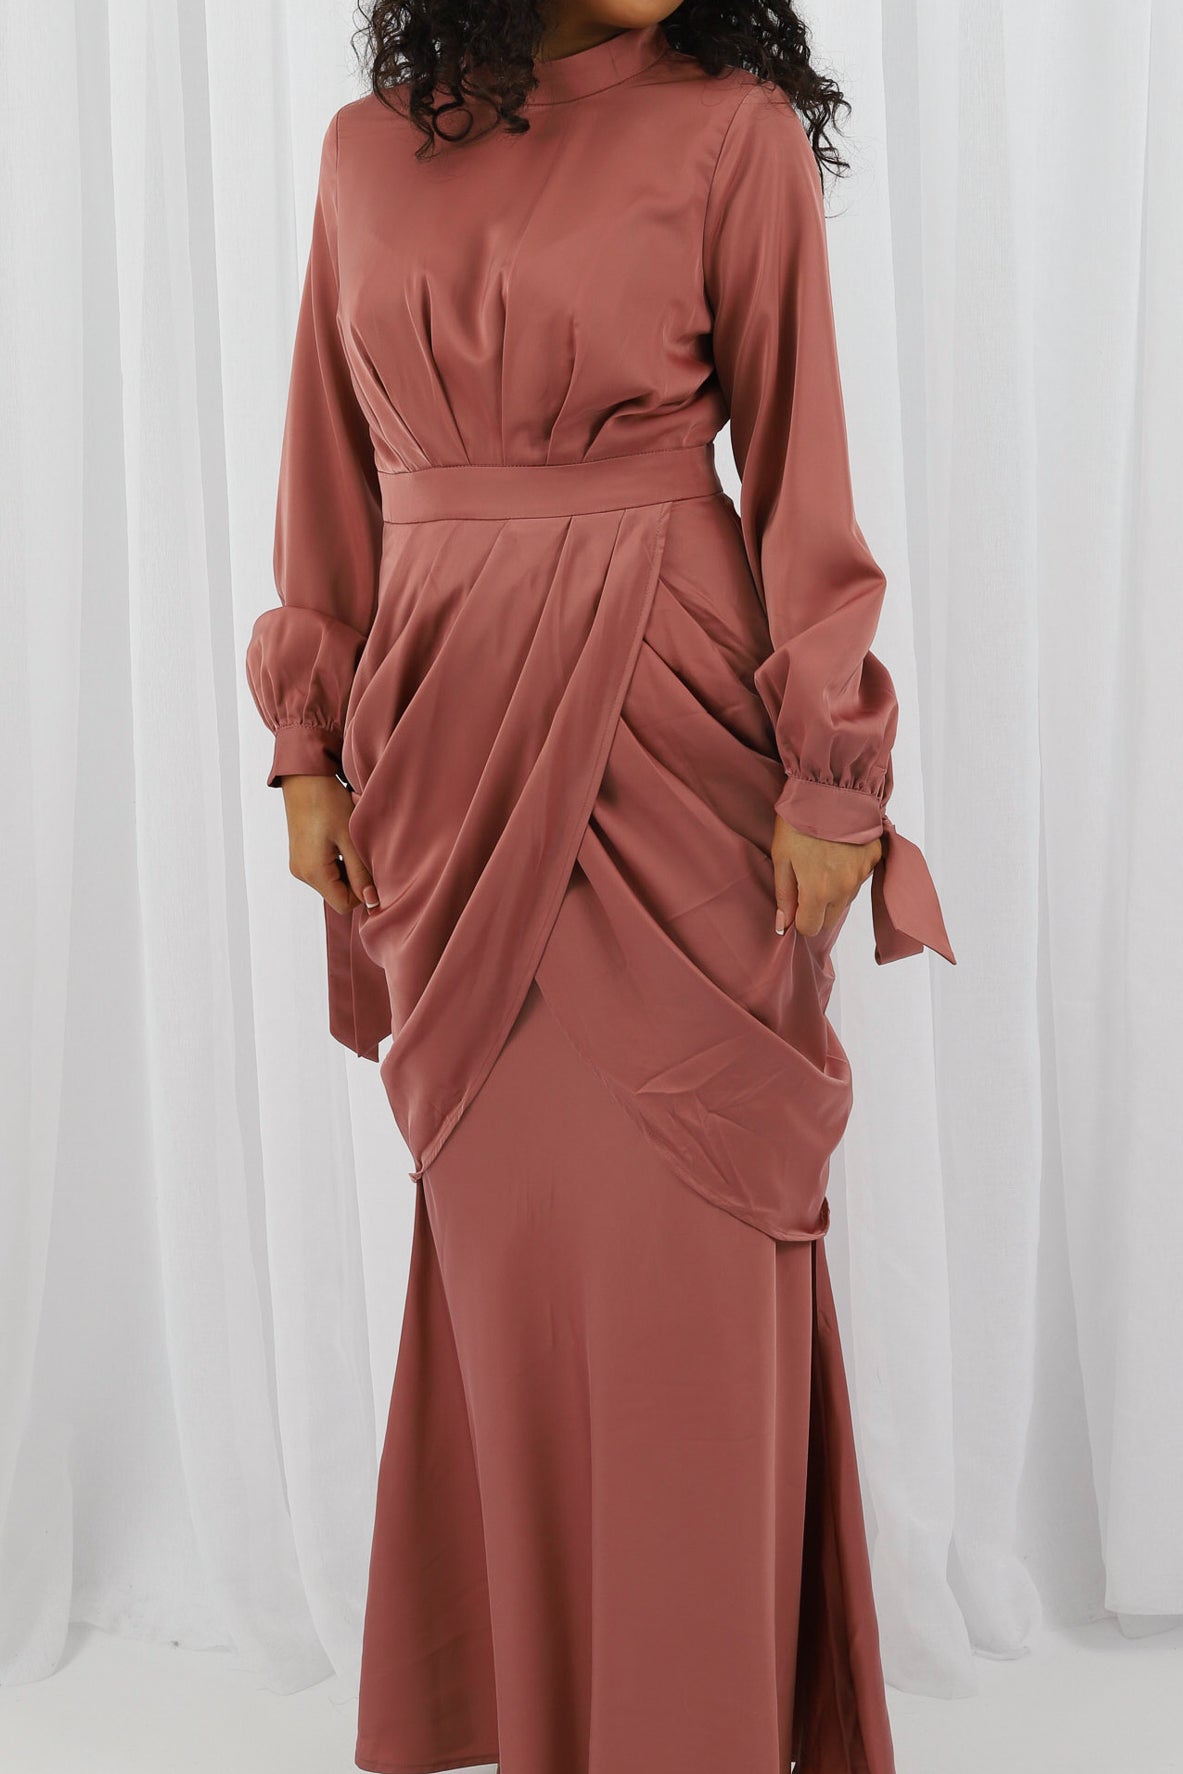 M7870Salmon-dress-abaya